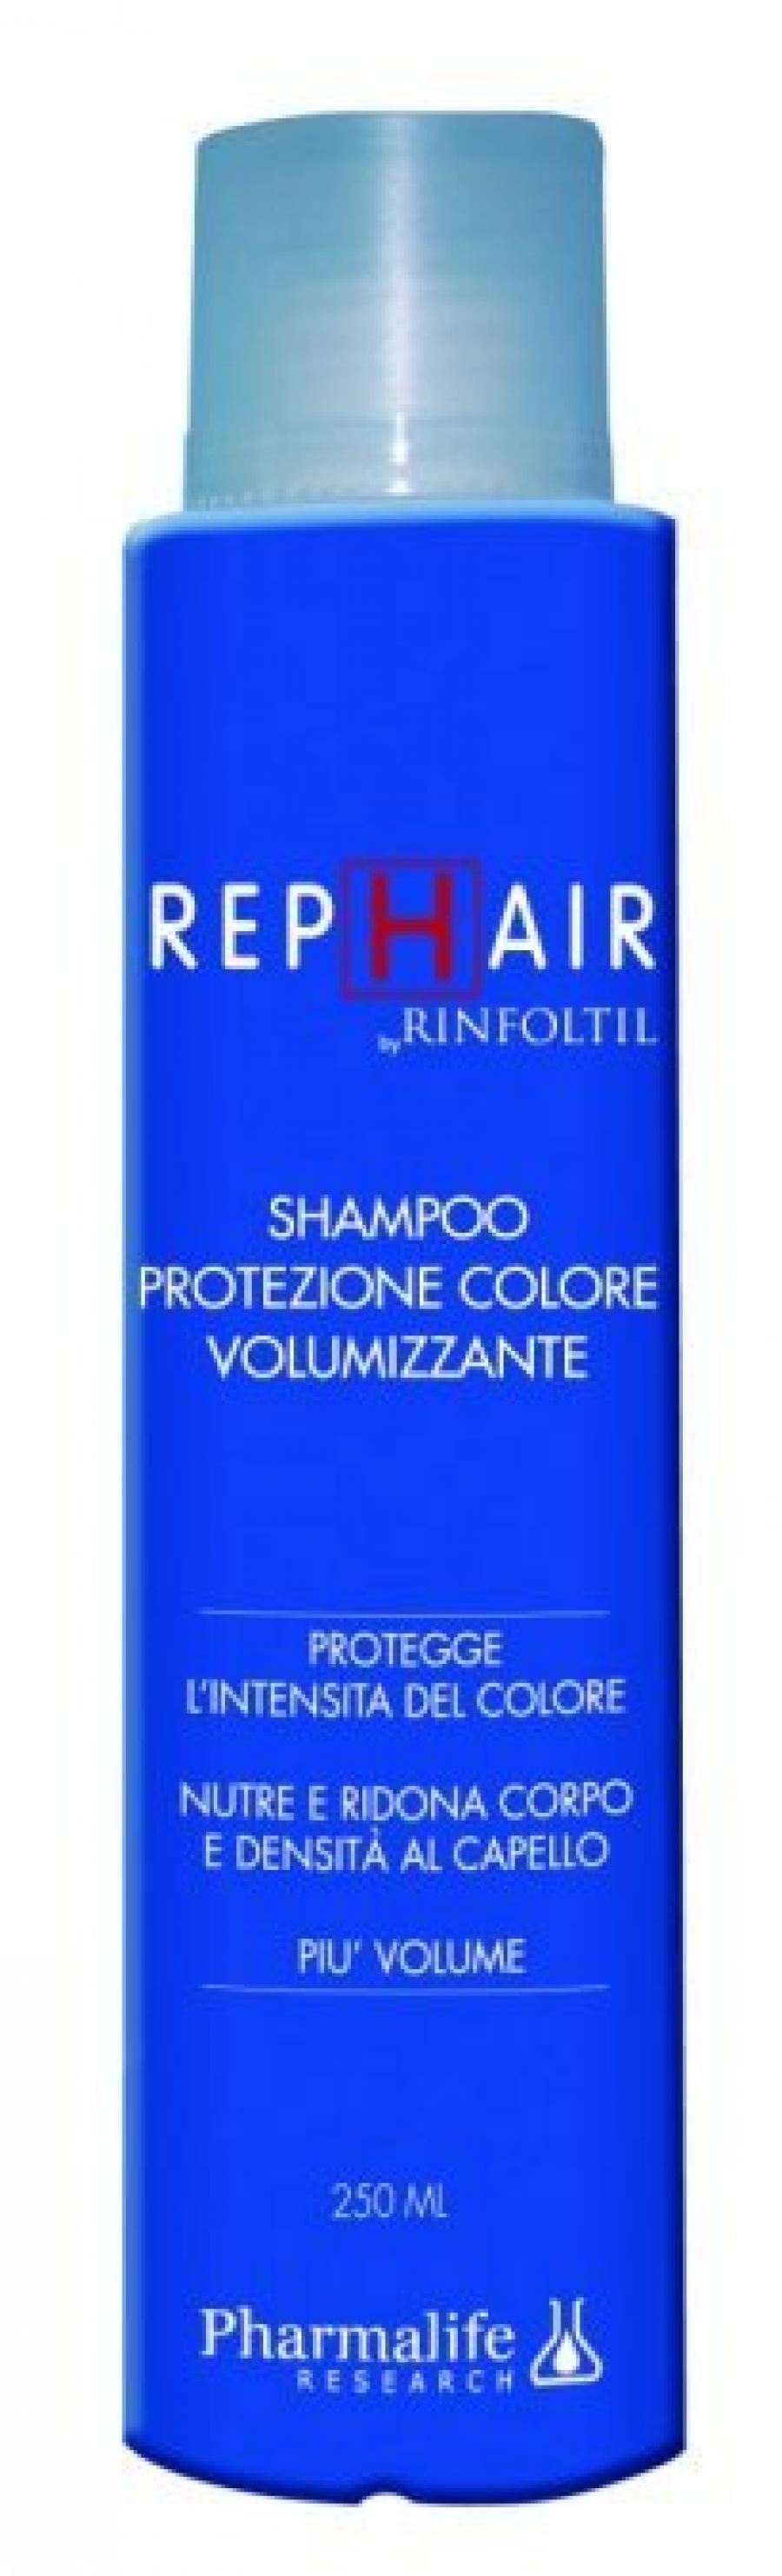 Rephair shampoo protezione colore volumizzante